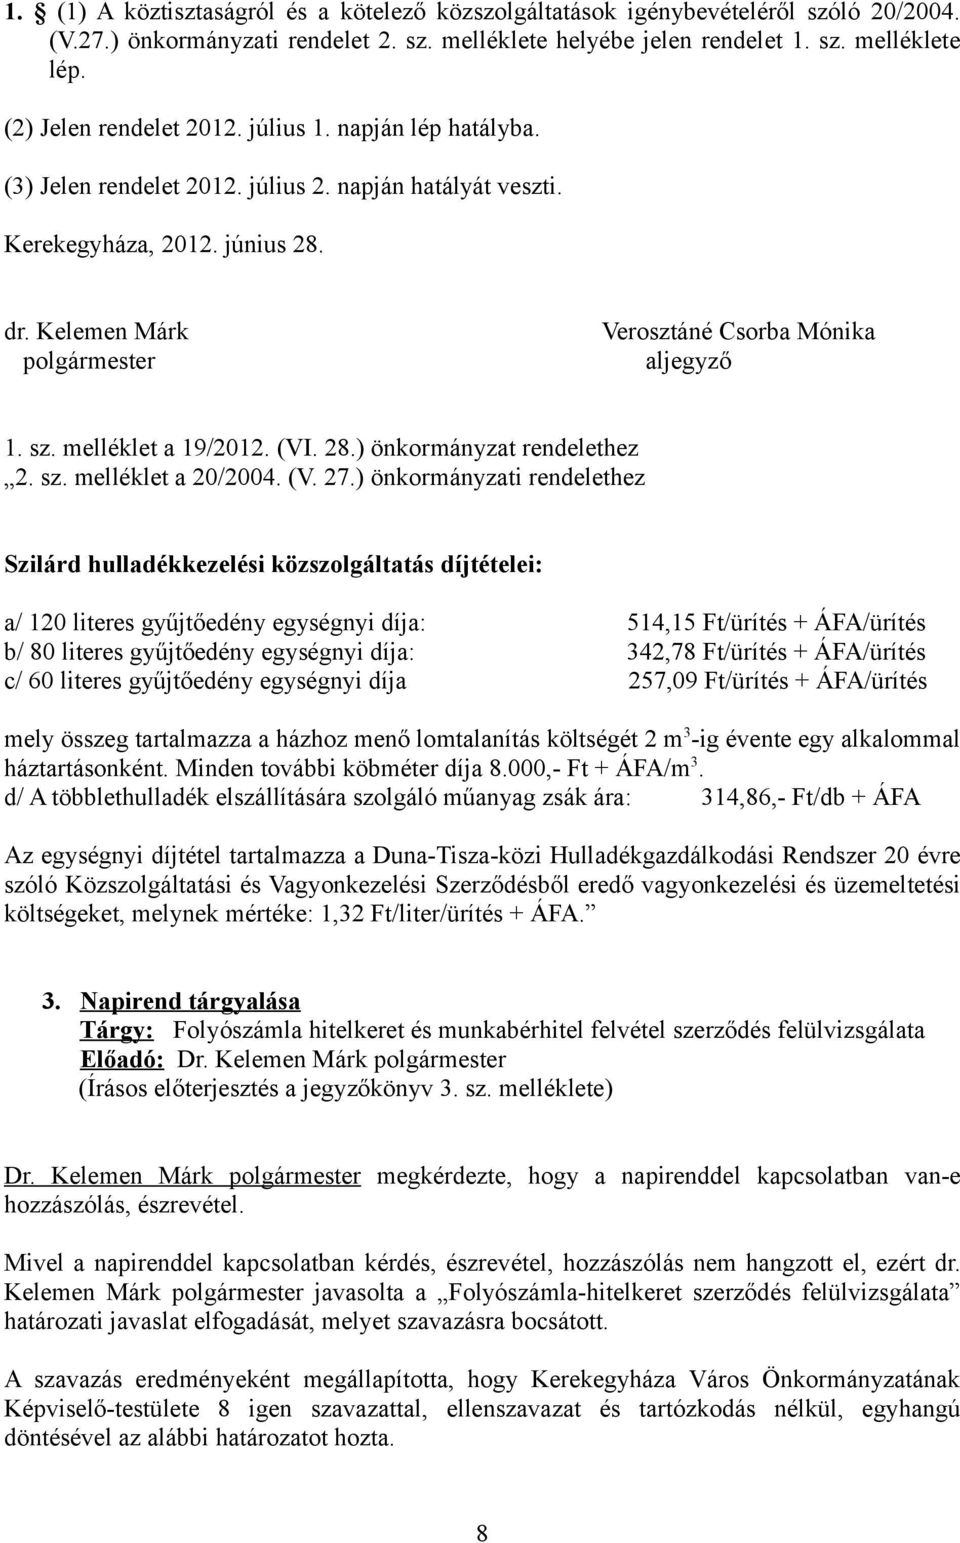 Kelemen Márk polgármester Verosztáné Csorba Mónika aljegyző 1. sz. melléklet a 19/2012. (VI. 28.) önkormányzat rendelethez 2. sz. melléklet a 20/2004. (V. 27.